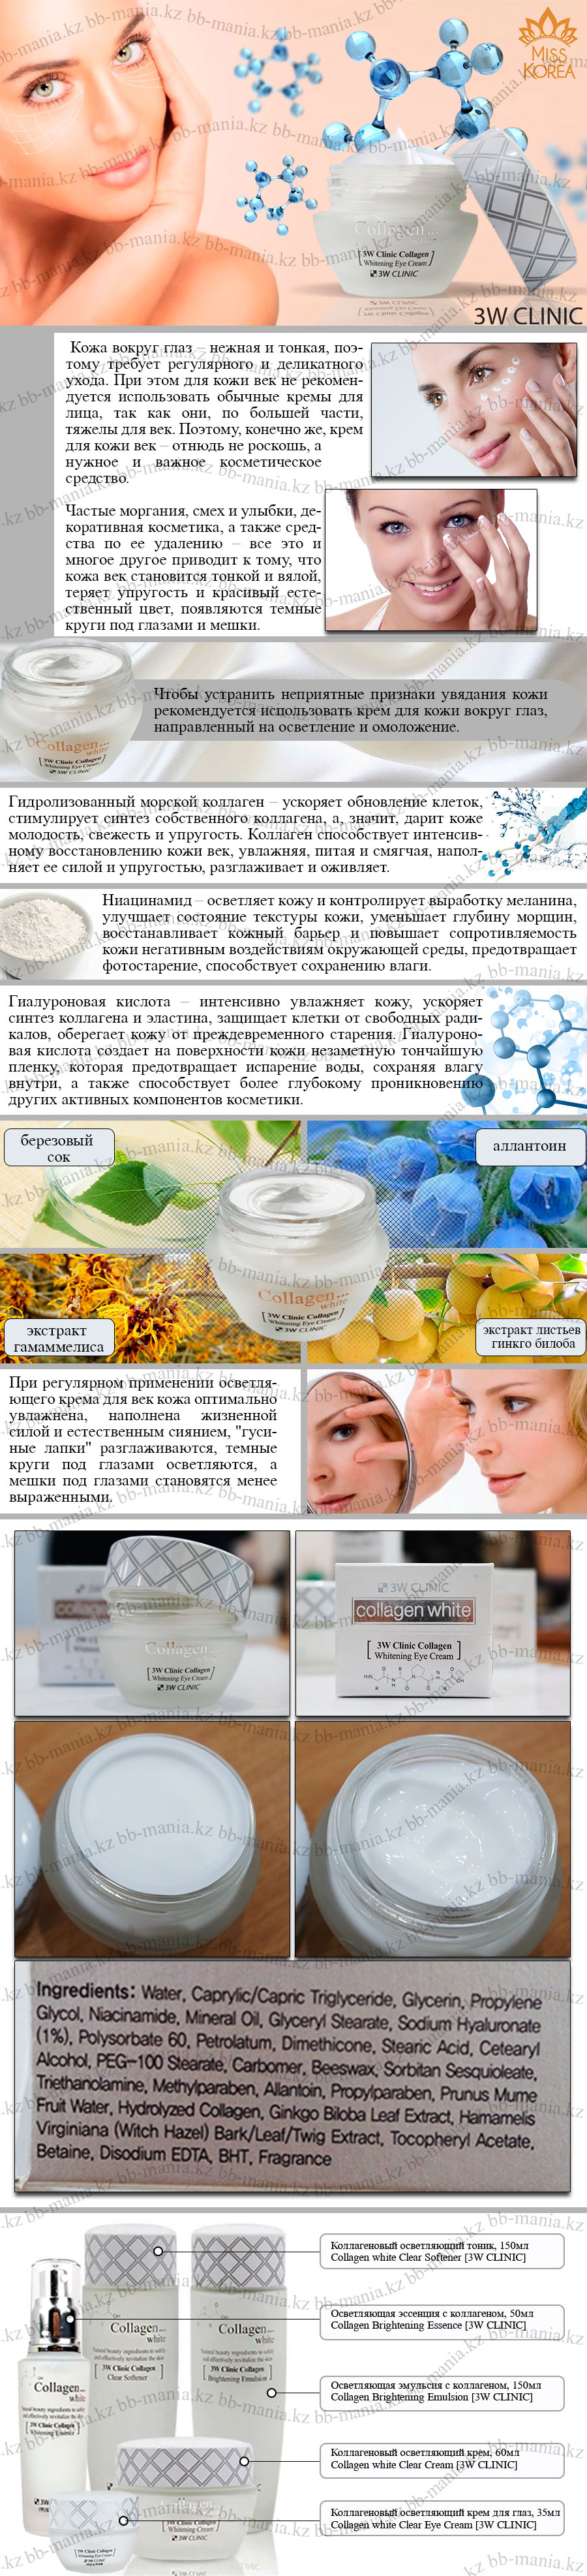 Collagen-Whitening-Eye-Cream-[3W-CLINIC]-min